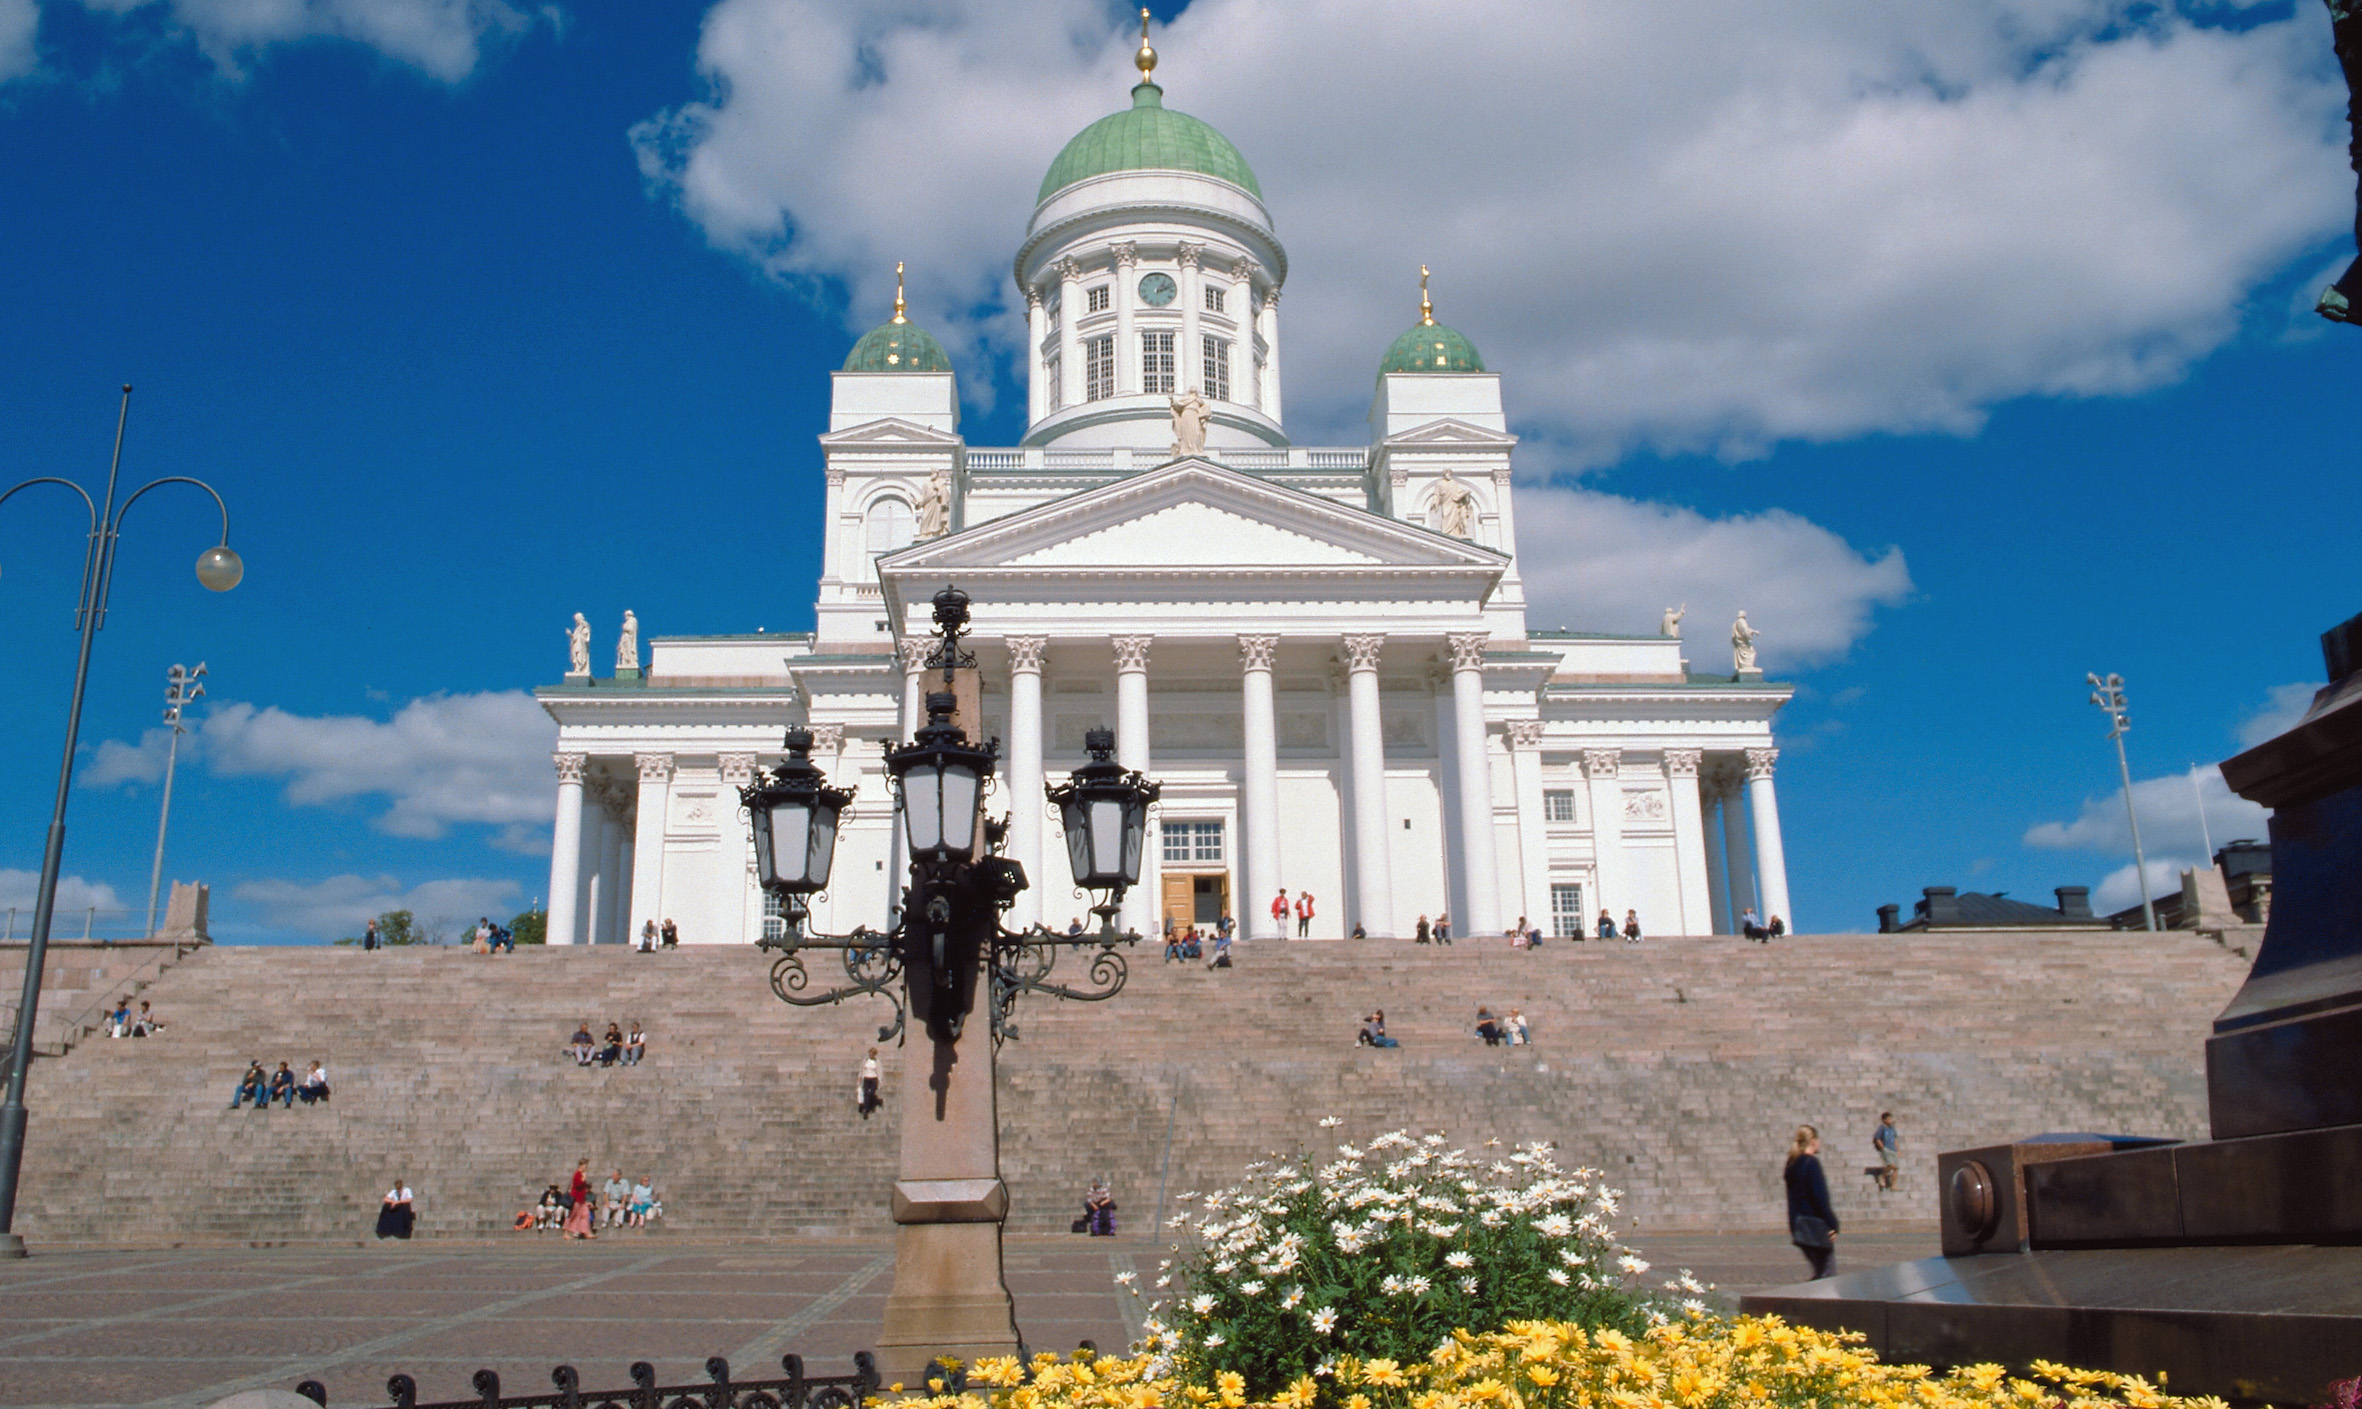 Senate Square - Helsinki.